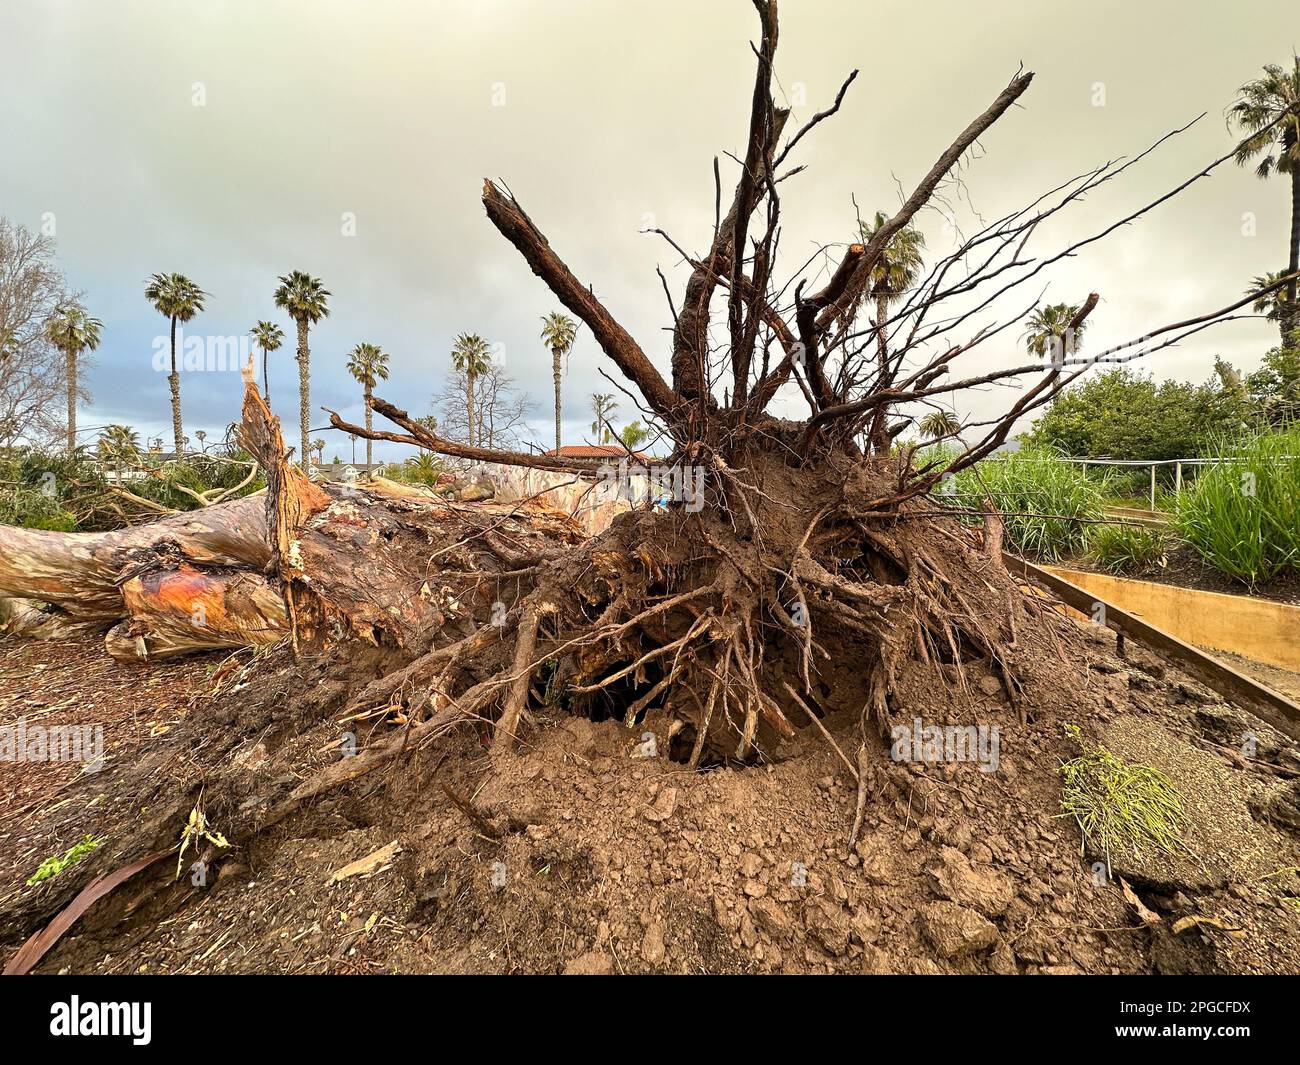 Carpinteria, California, EE.UU. 21st de marzo de 2023. Árbol caído gigante expone sus raíces el 21 de marzo de 2023, debido a las fuertes lluvias y vientos a lo largo de Linden Ave., en Carpinteria, CA, cerca de la playa estatal de Carpinteria, en el condado de Santa Bárbara. Una mujer se queda asombrada y toma fotos de la zona. (Imagen de crédito: © Amy Katz/ZUMA Press Wire) ¡USO EDITORIAL SOLAMENTE! ¡No para USO comercial! Foto de stock